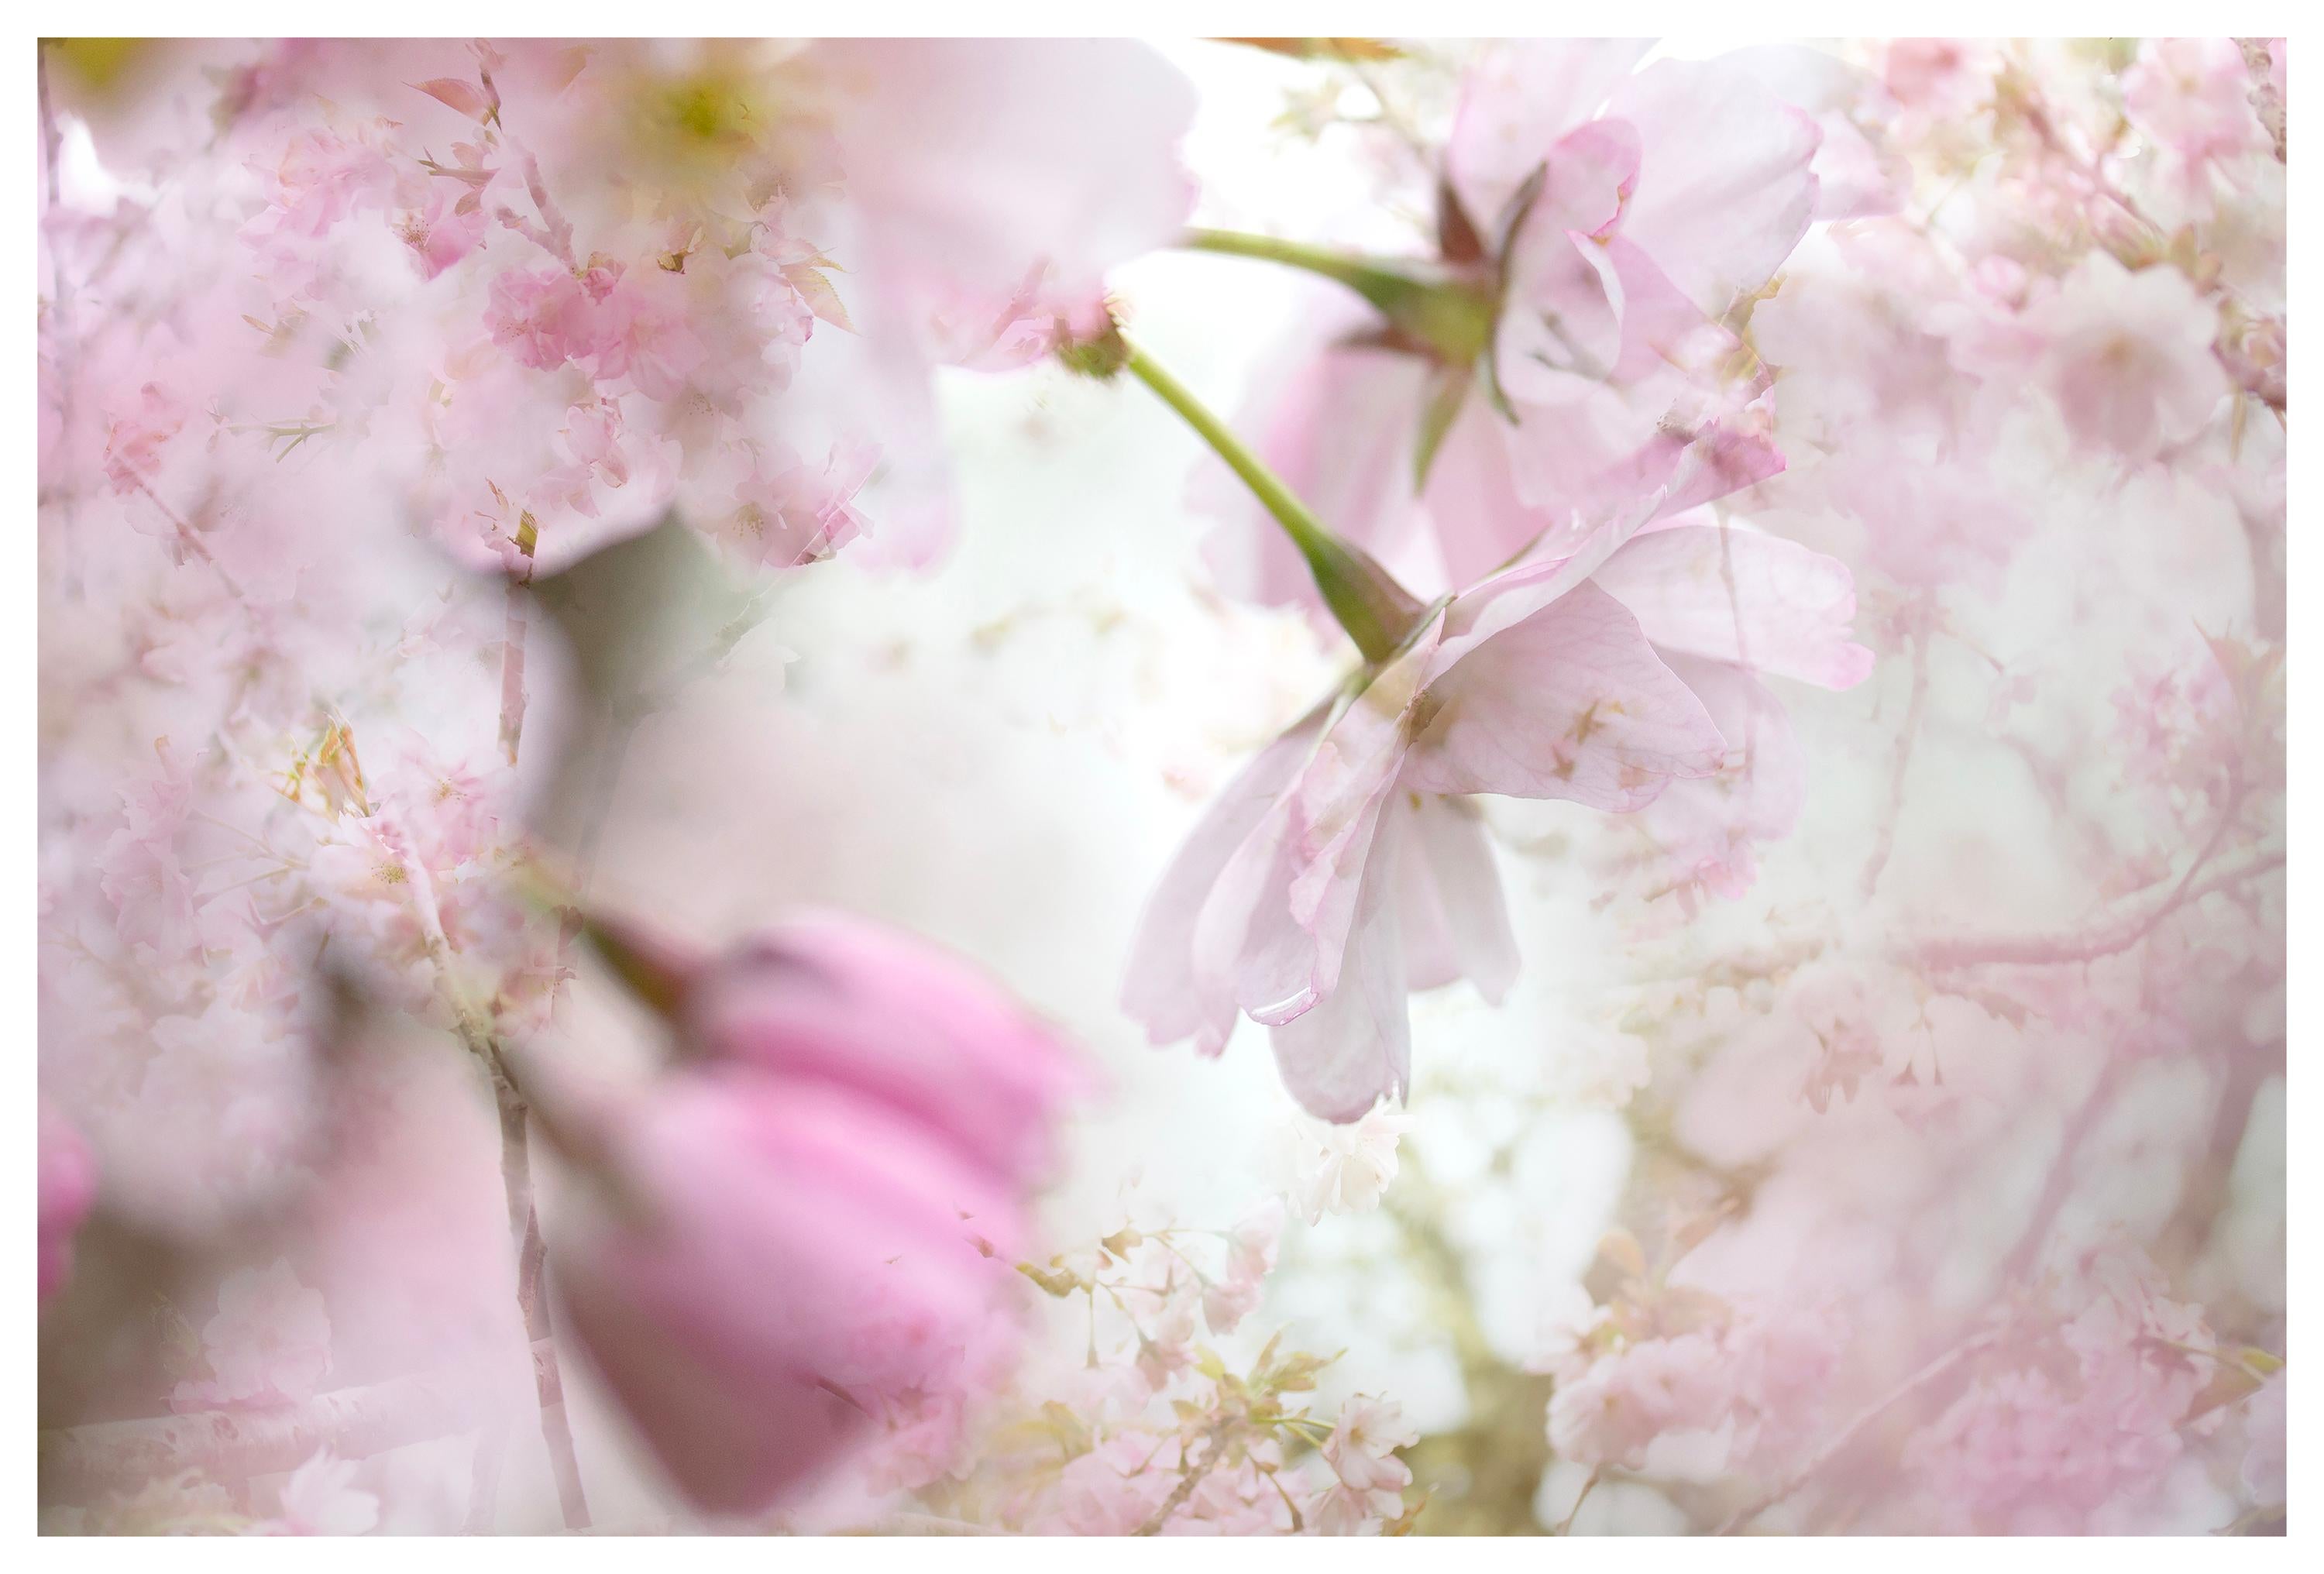 Großformatige Fotografie „Frühling couplet“ Kirschblüten-Sakura-Blumen in Weiß und Rosa